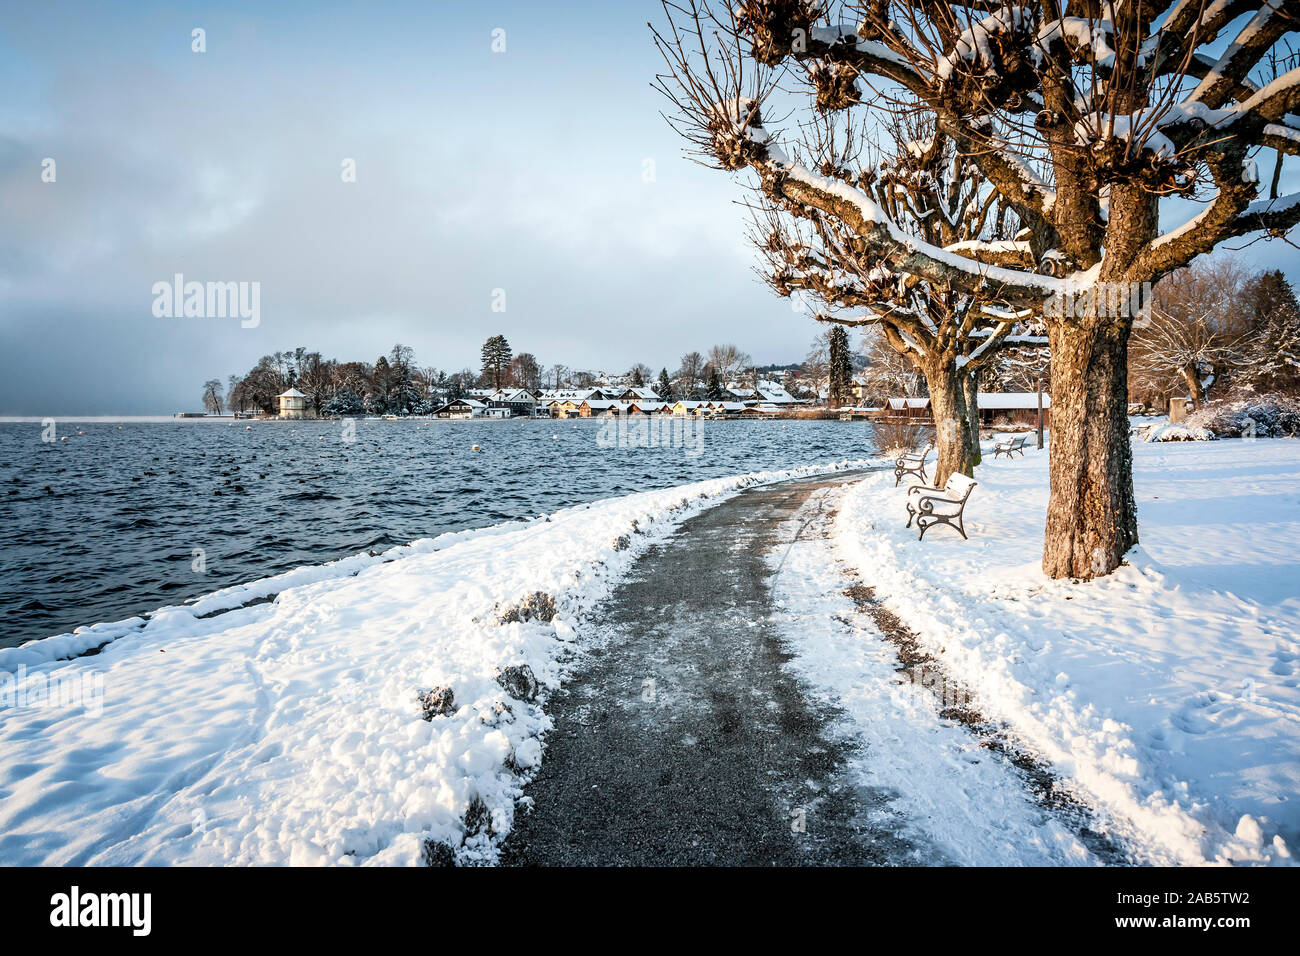 Eine wunderschoene winterliche Szenerie in Tutzing, Deutschland Stock Photo